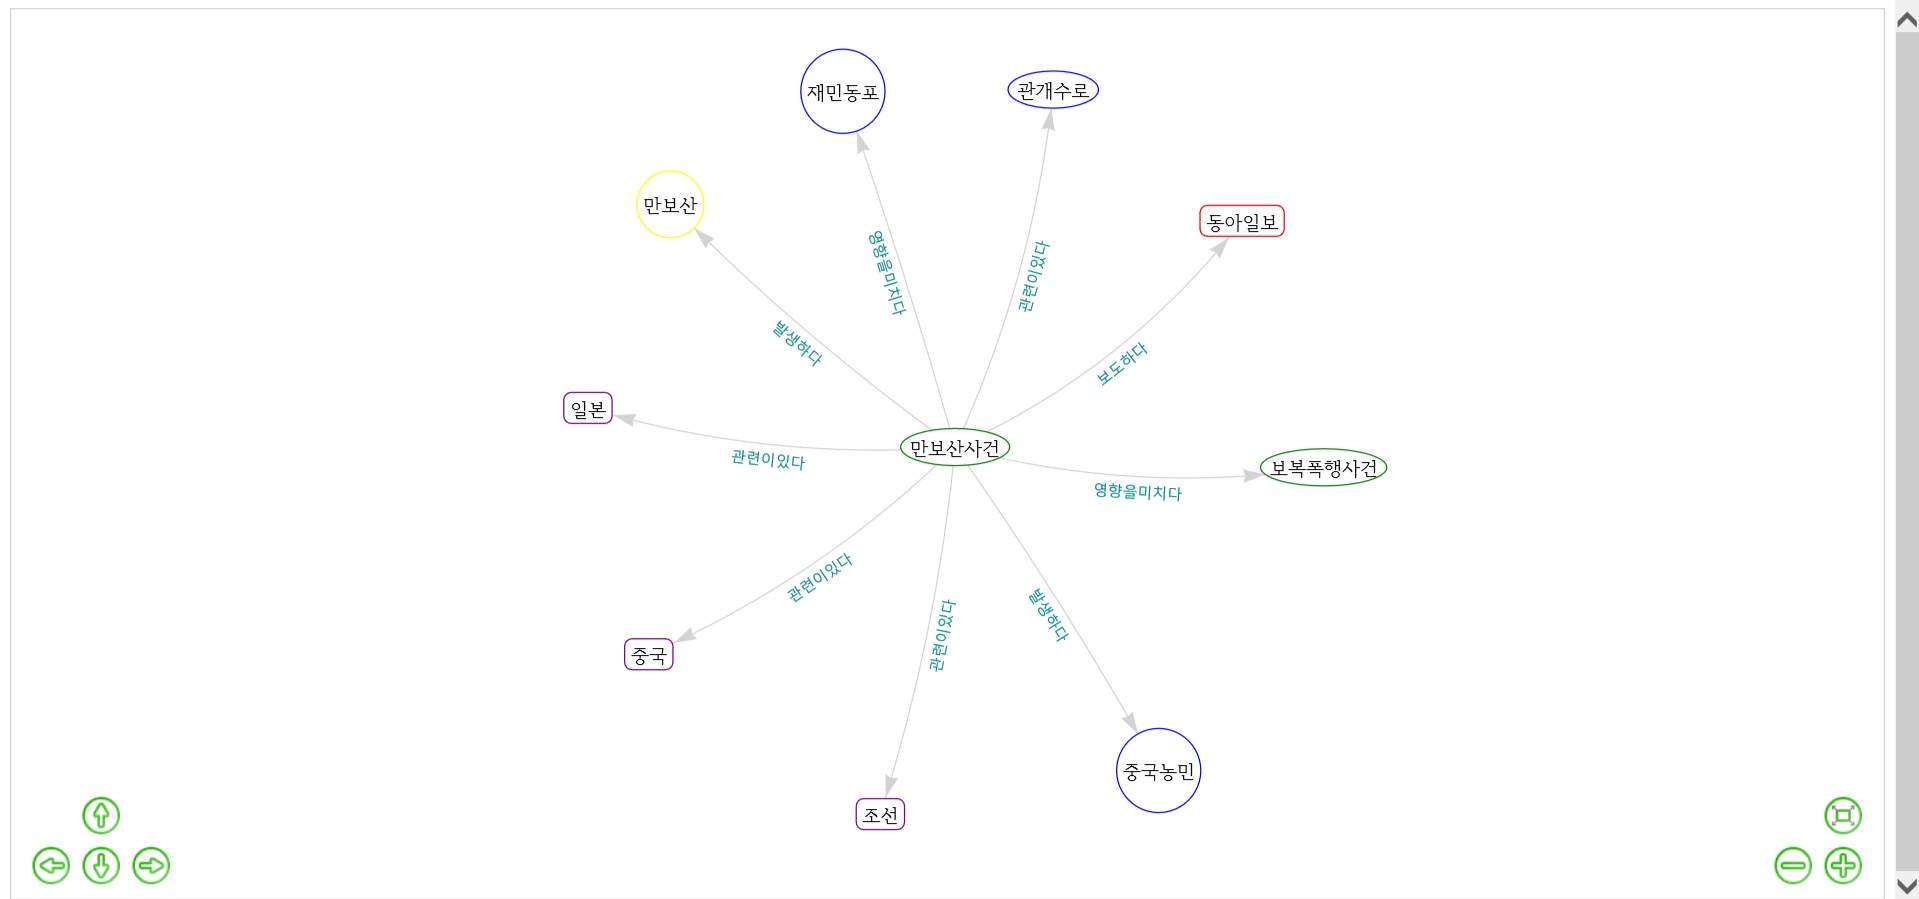 만보산사건 네트워크 그래프.jpg